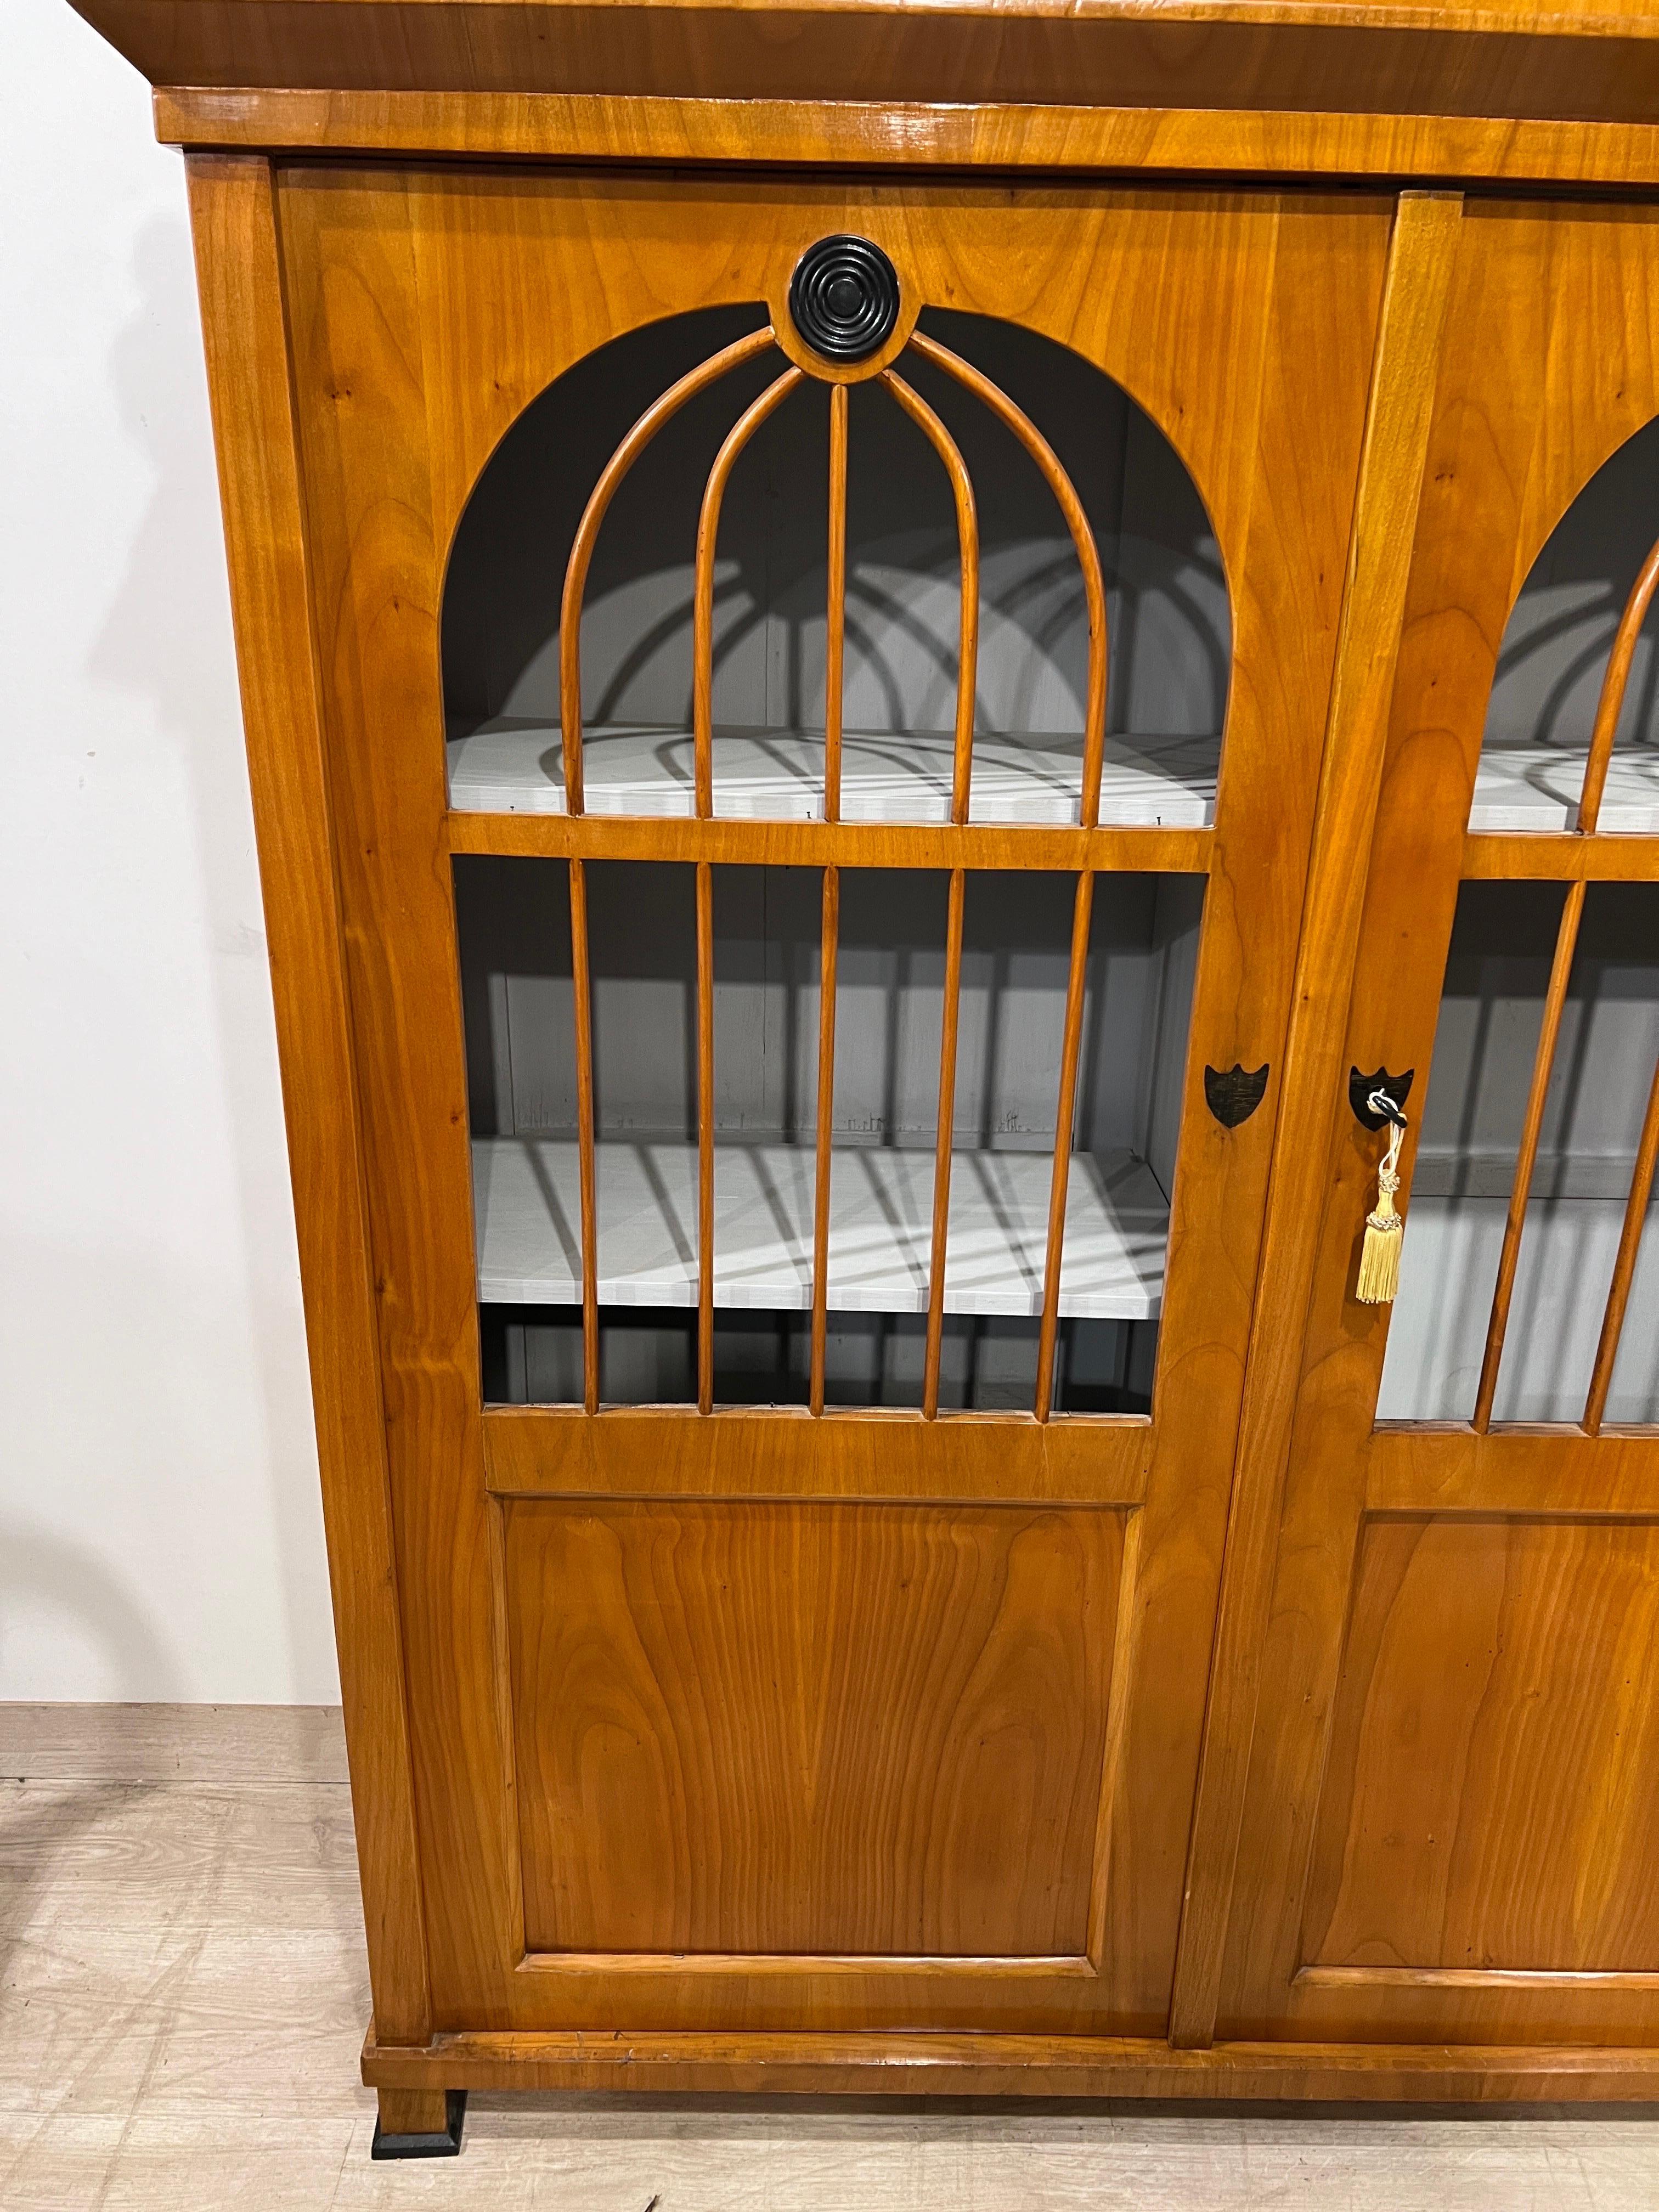 Russisches Kabinett Biedermeier, um 1820, Kirschholz und ebonisierte Profile, prächtiges Möbelstück in warmer, heller Farbe, offene Türen mit abgerundeten Stäben, auf Wunsch kann Glas eingesetzt werden.
Auf der Vorderseite des Tempels befindet sich